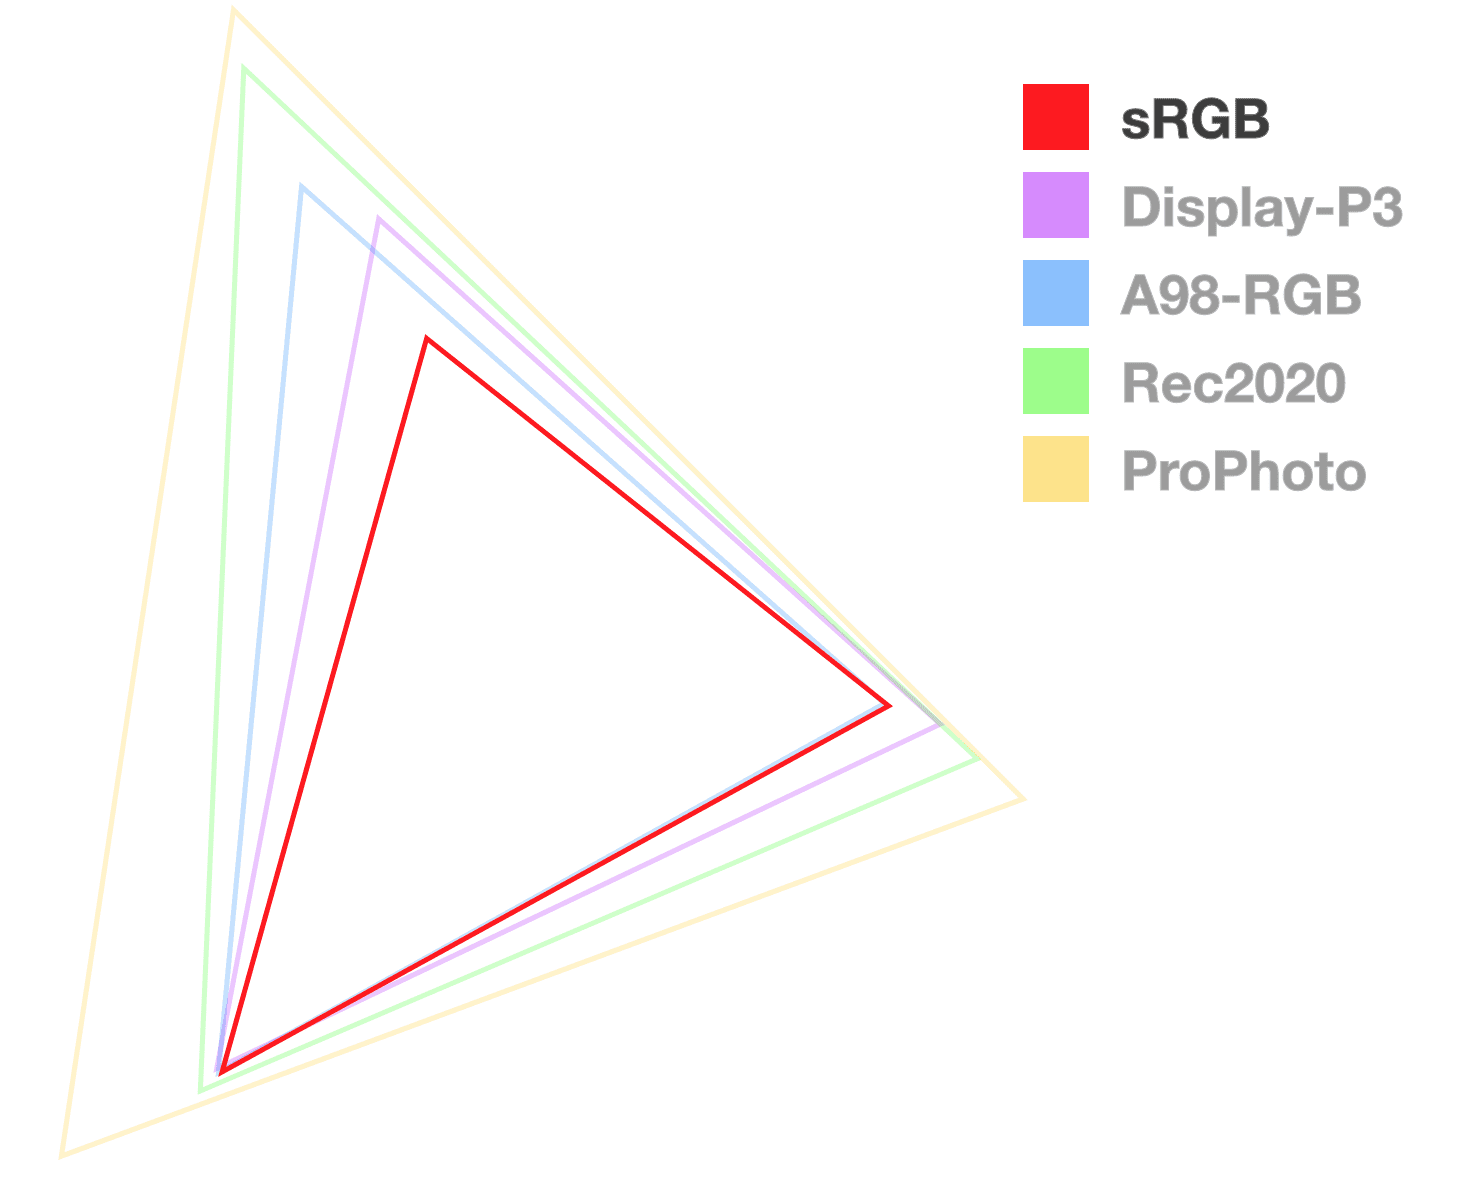 משולש sRGB הוא משולש אטום לחלוטין היחיד, שעוזר להמחיש את הגודל של הסולם.